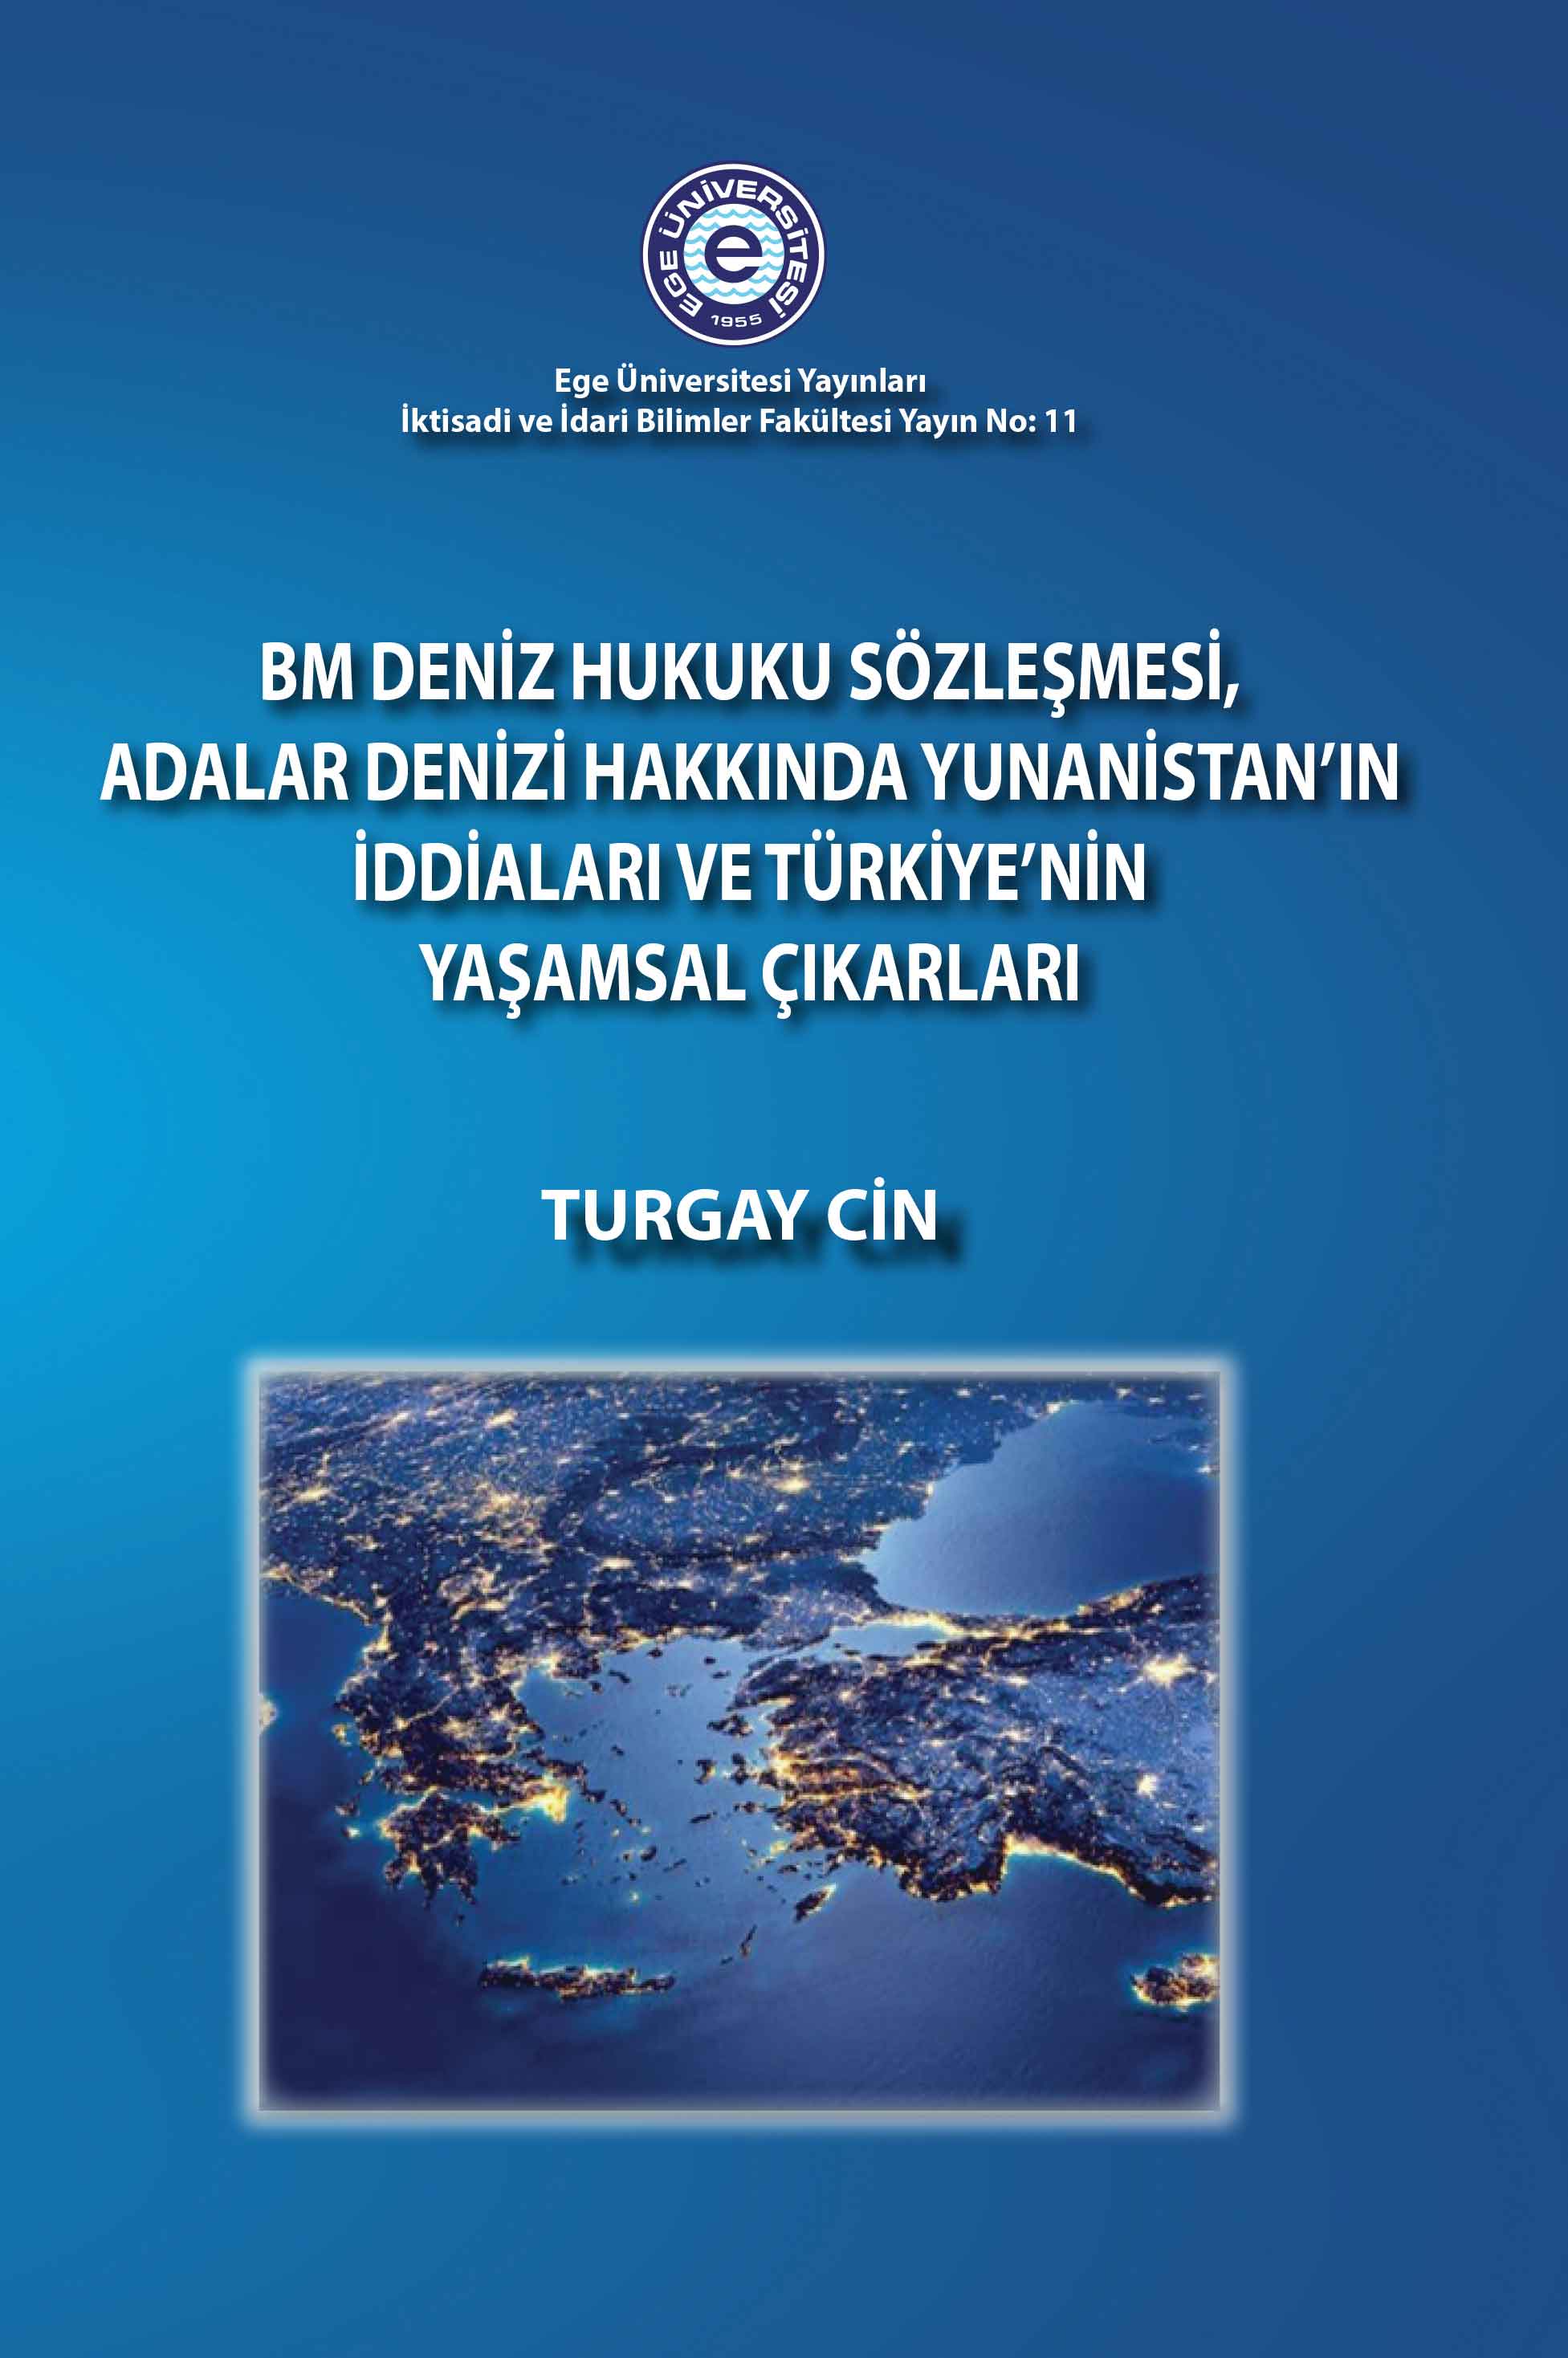 BM Deniz Hukuku Sözleşmesi, Adalar Denizi Hakkında Yunanistan'ın İddiaları ve Türkiye'nin Yaşamsal Çıkarları